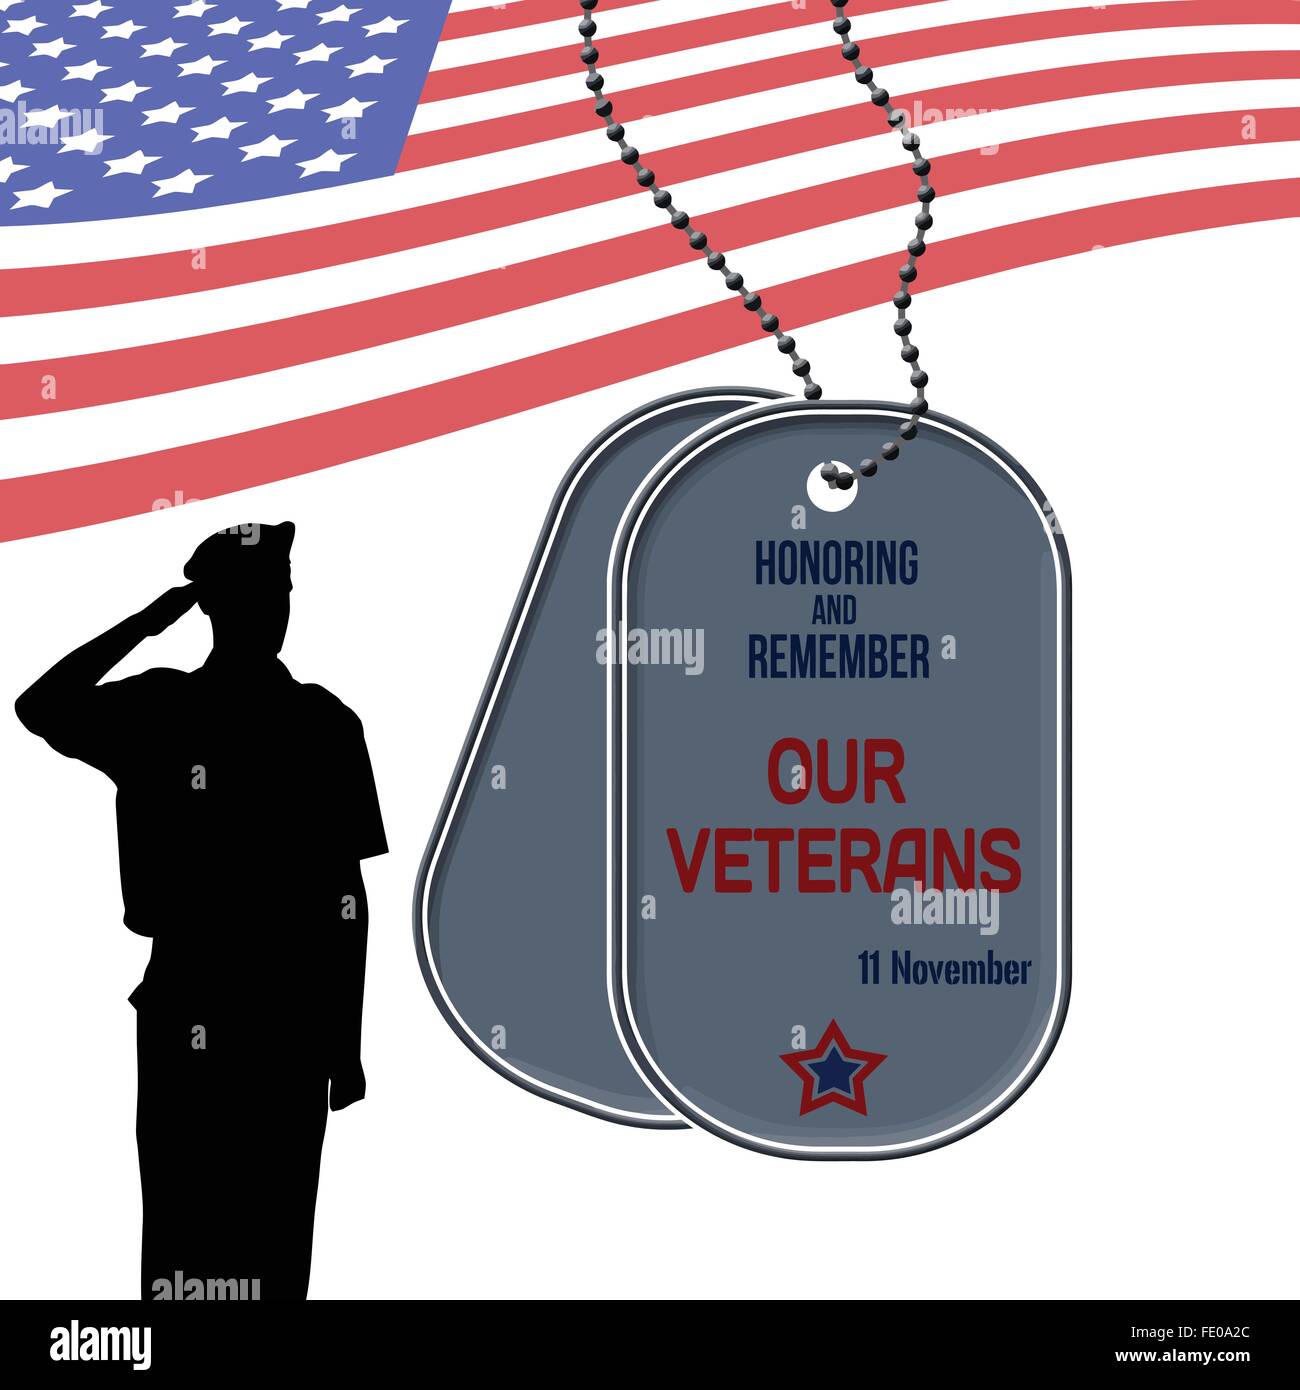 El Día de los veteranos póster con el US Army Soldier saludando la bandera americana Ilustración del Vector